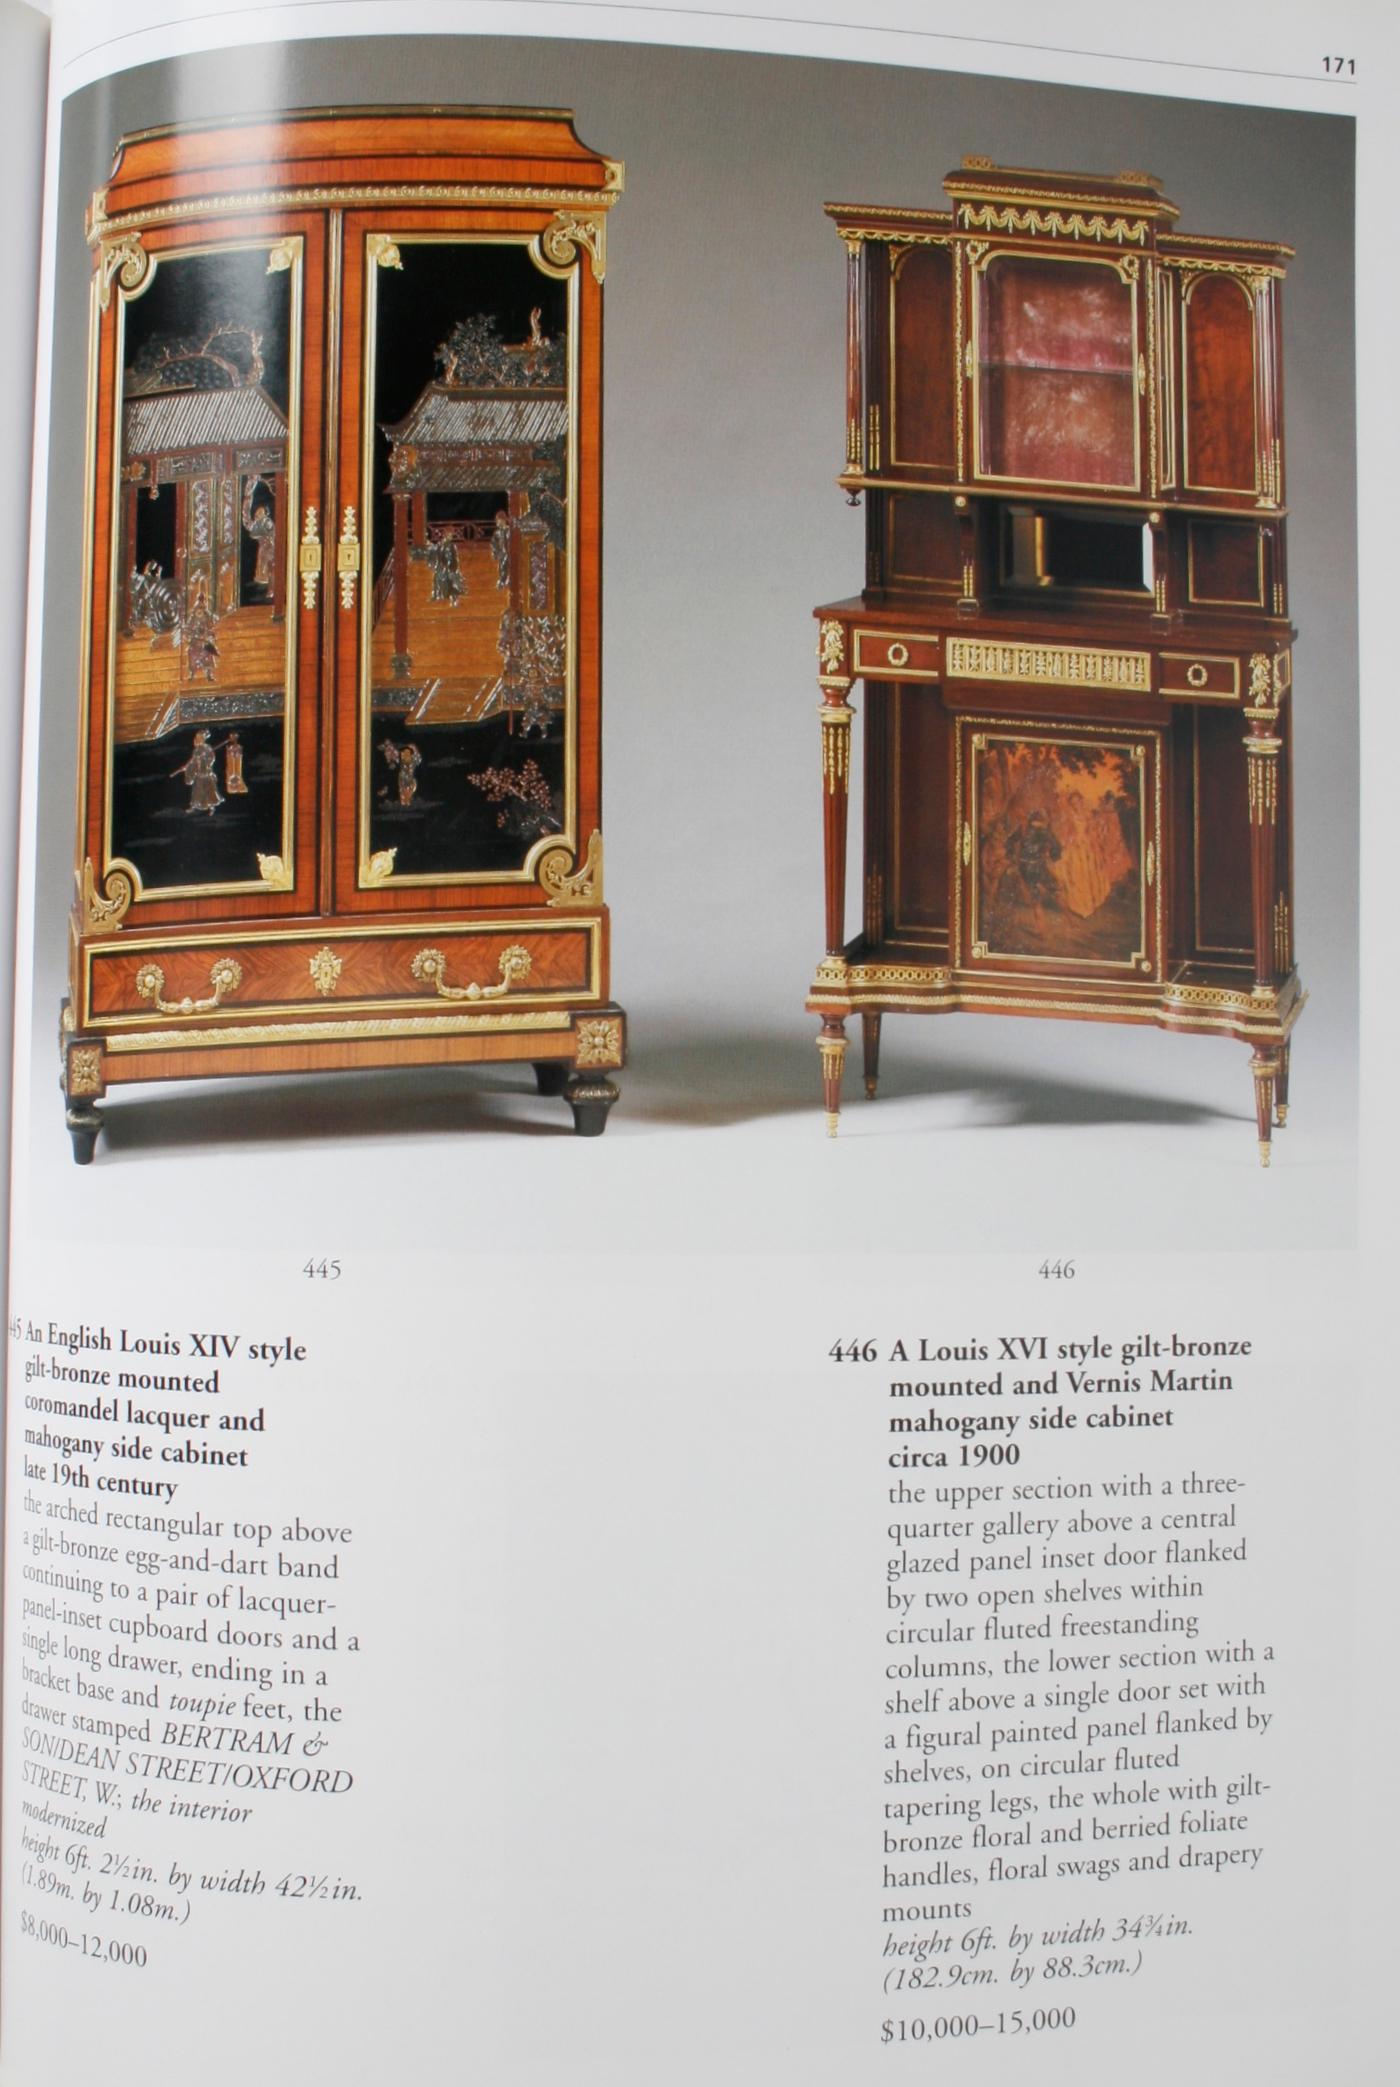 Meubles, céramiques et décorations Sotheby's, succession de George Parker, Jr. en vente 9